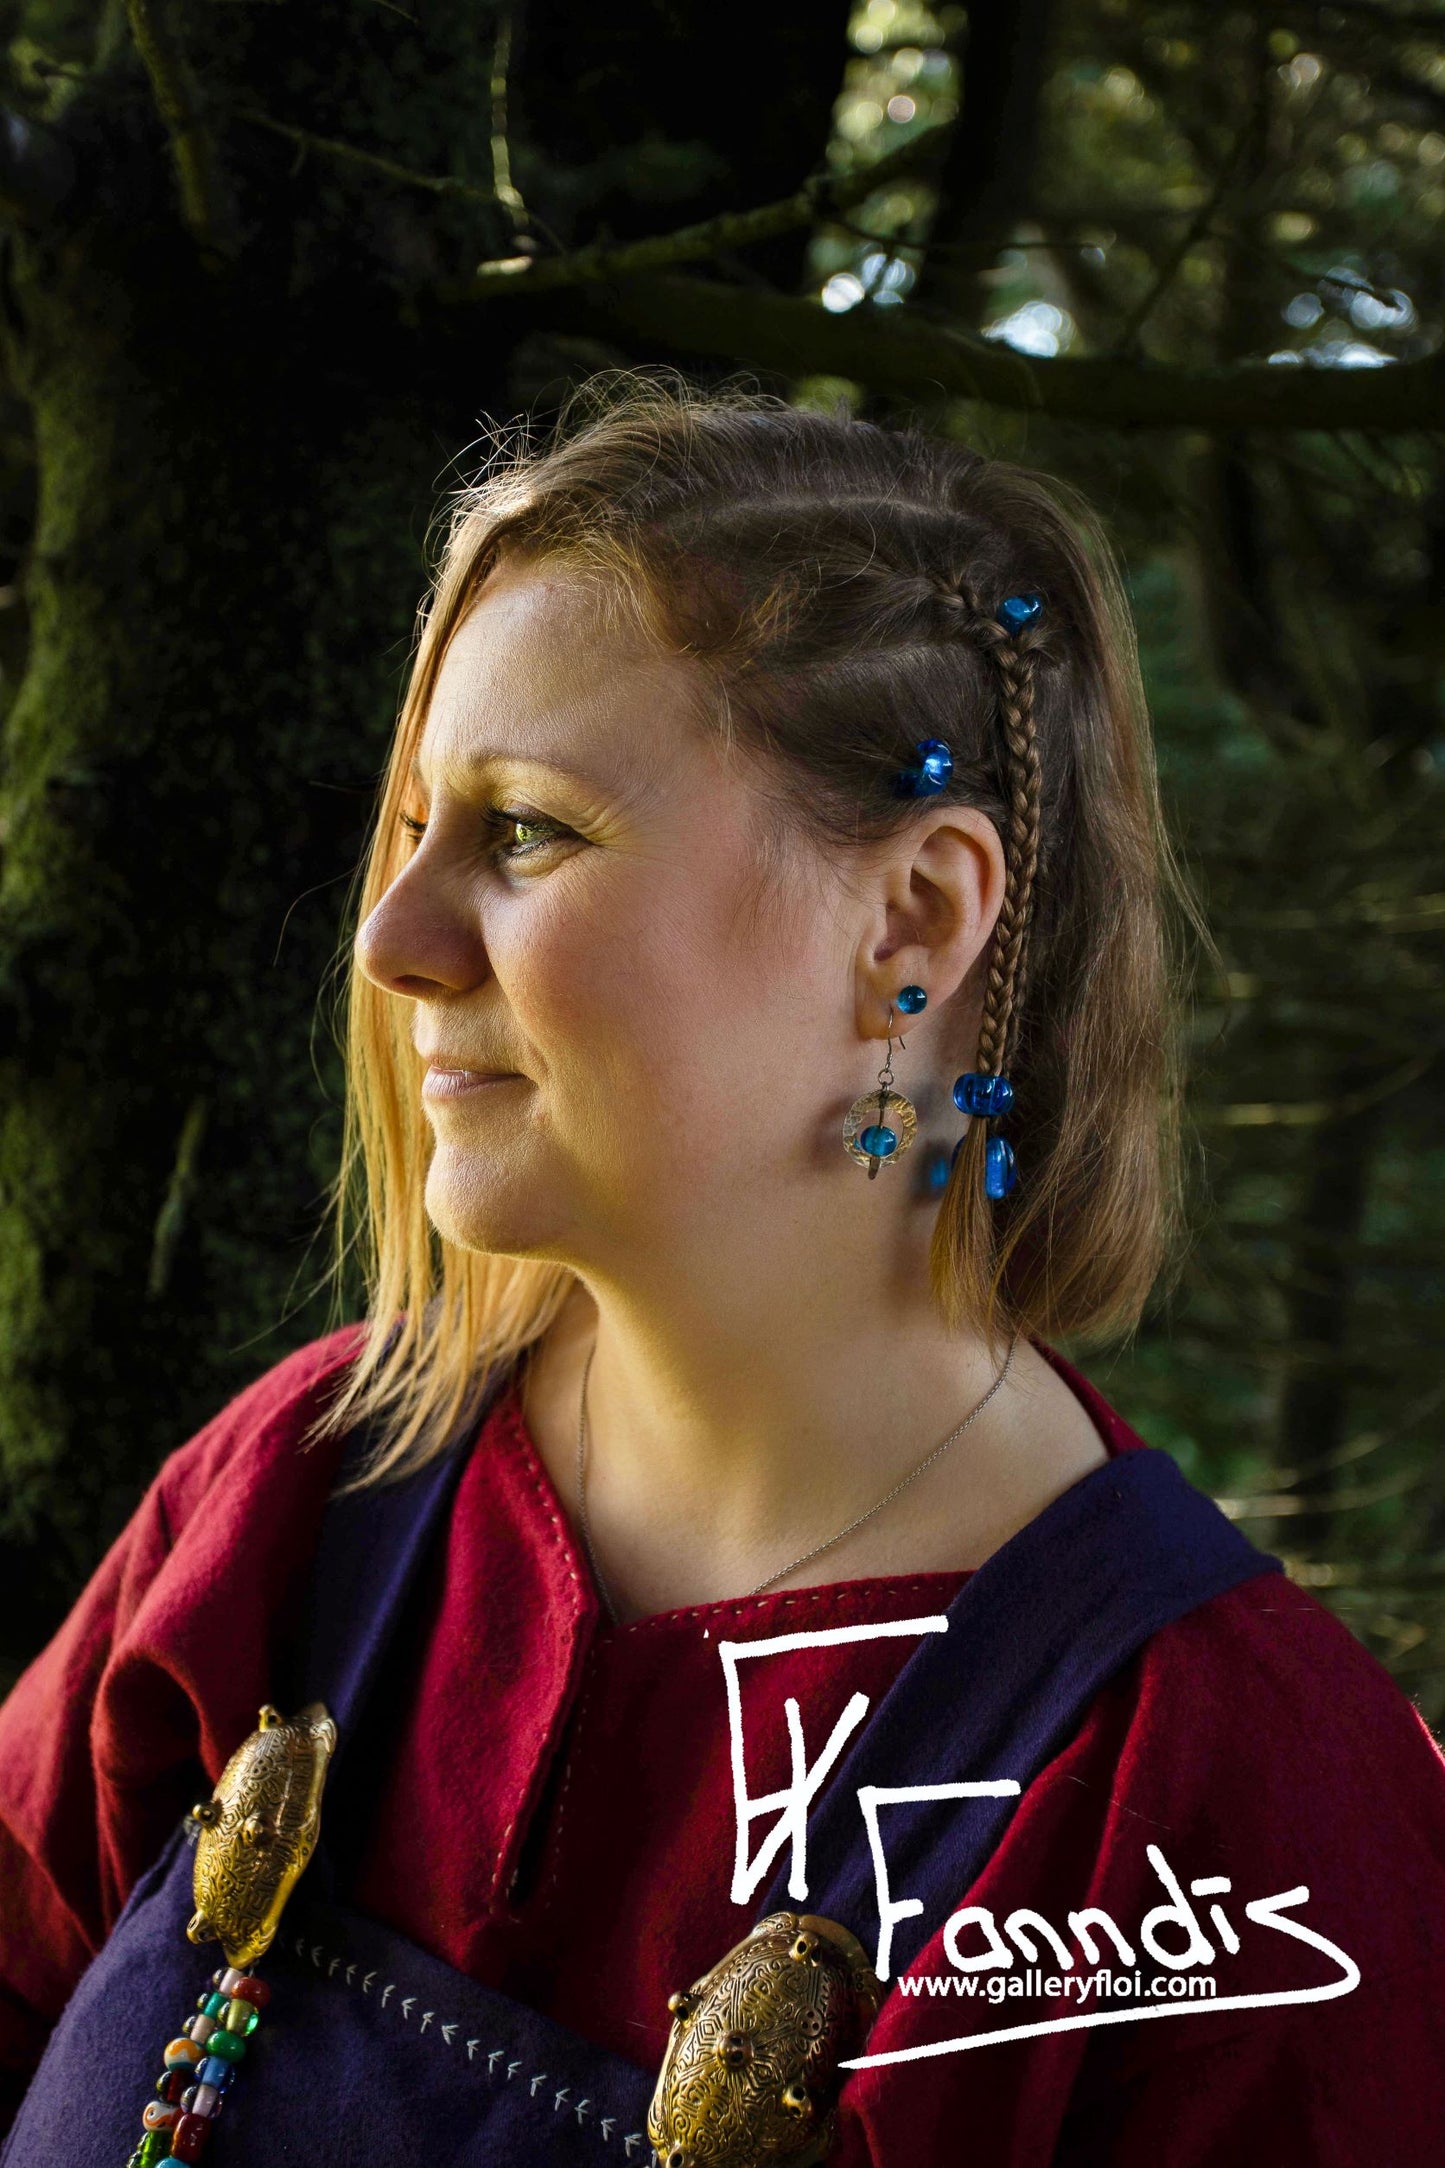 Víkinga glerperlu hárskraut sægrænn / Viking glass bead hair accessories Teal